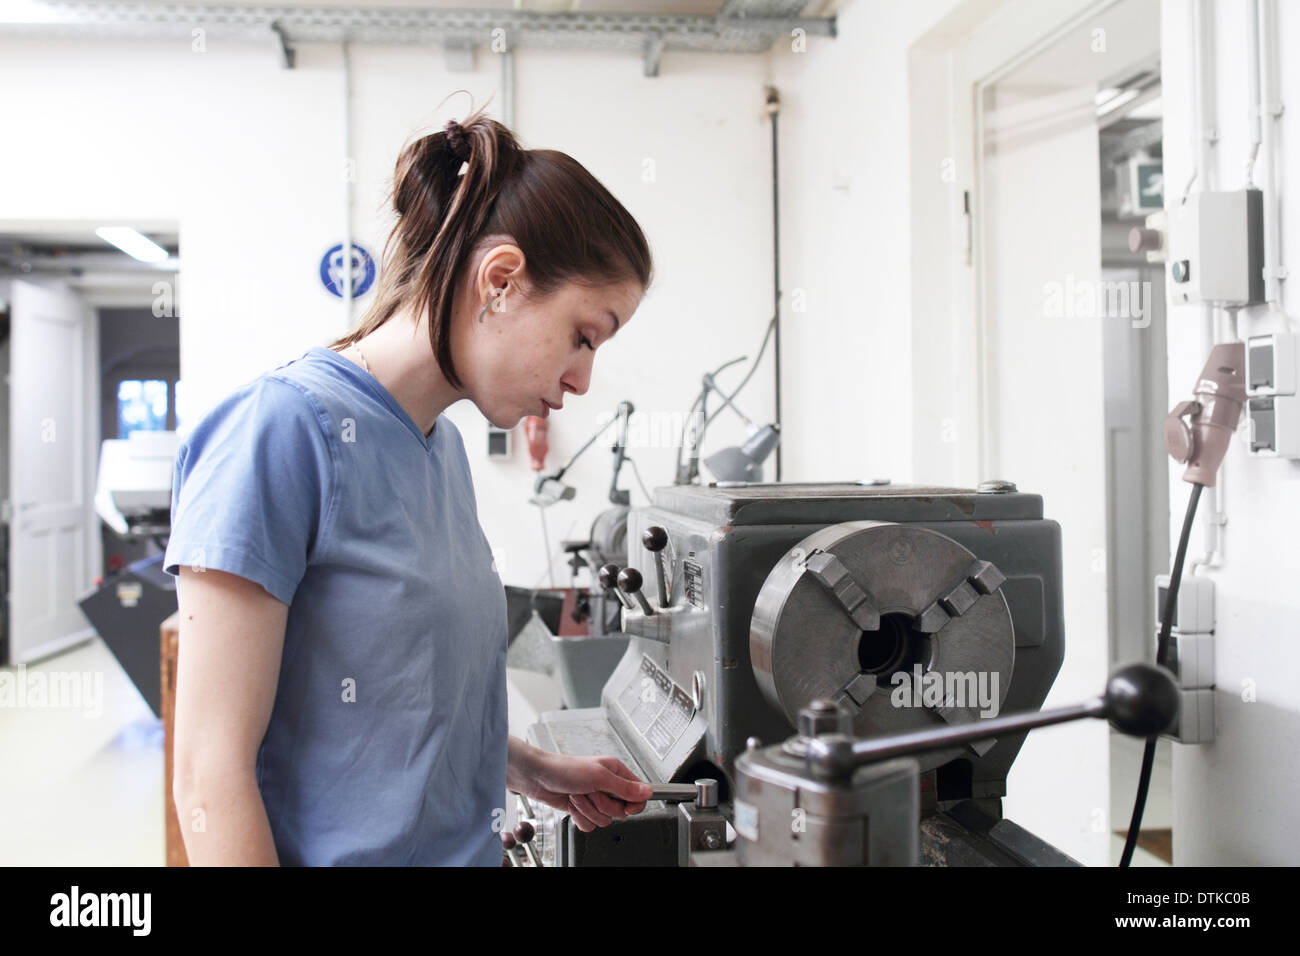 junge Frau in einem Handwerk Mechaniker Raum arbeiten Stockfoto